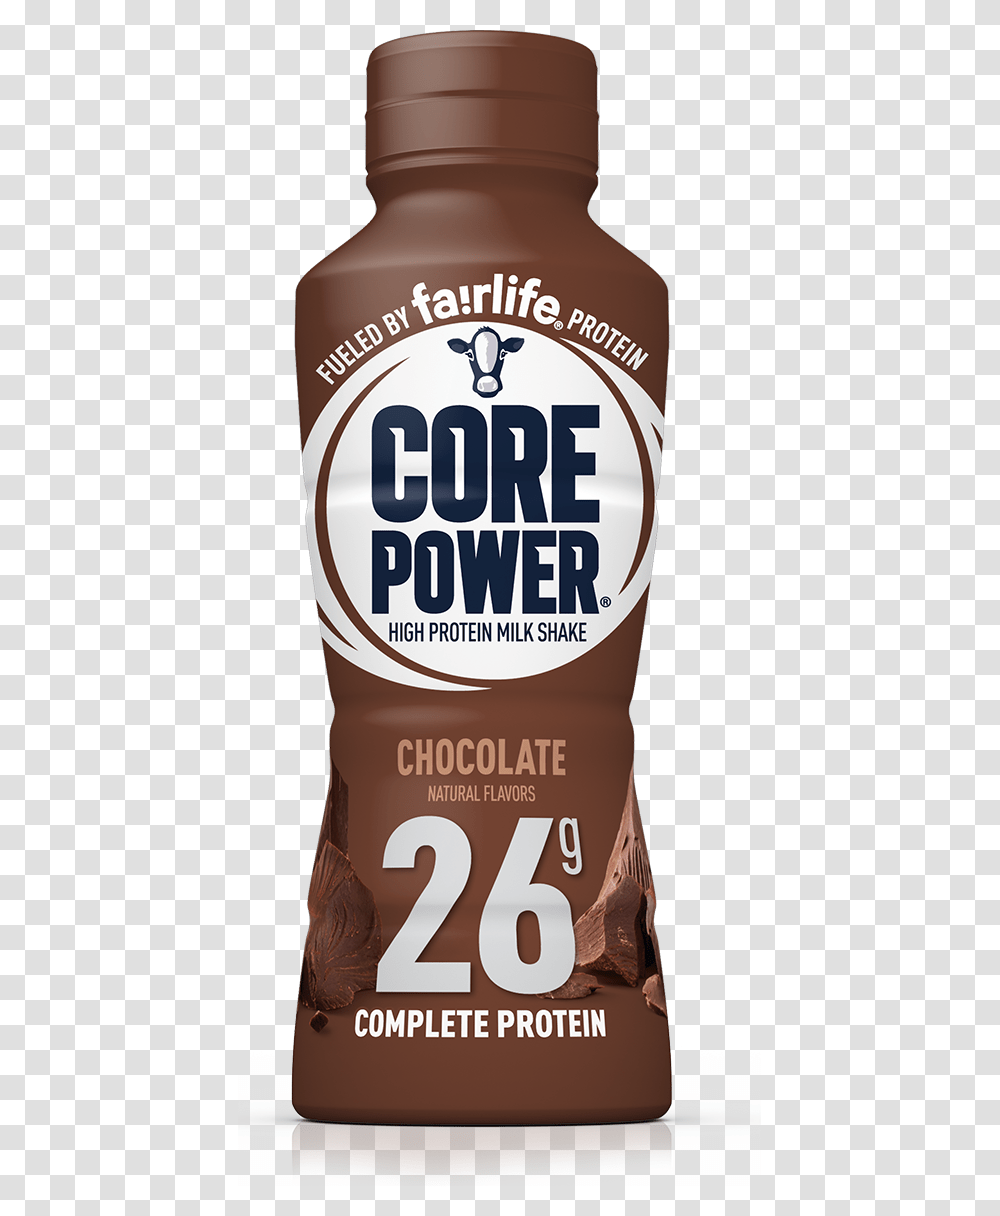 Core Power, Label, Bottle, Food Transparent Png